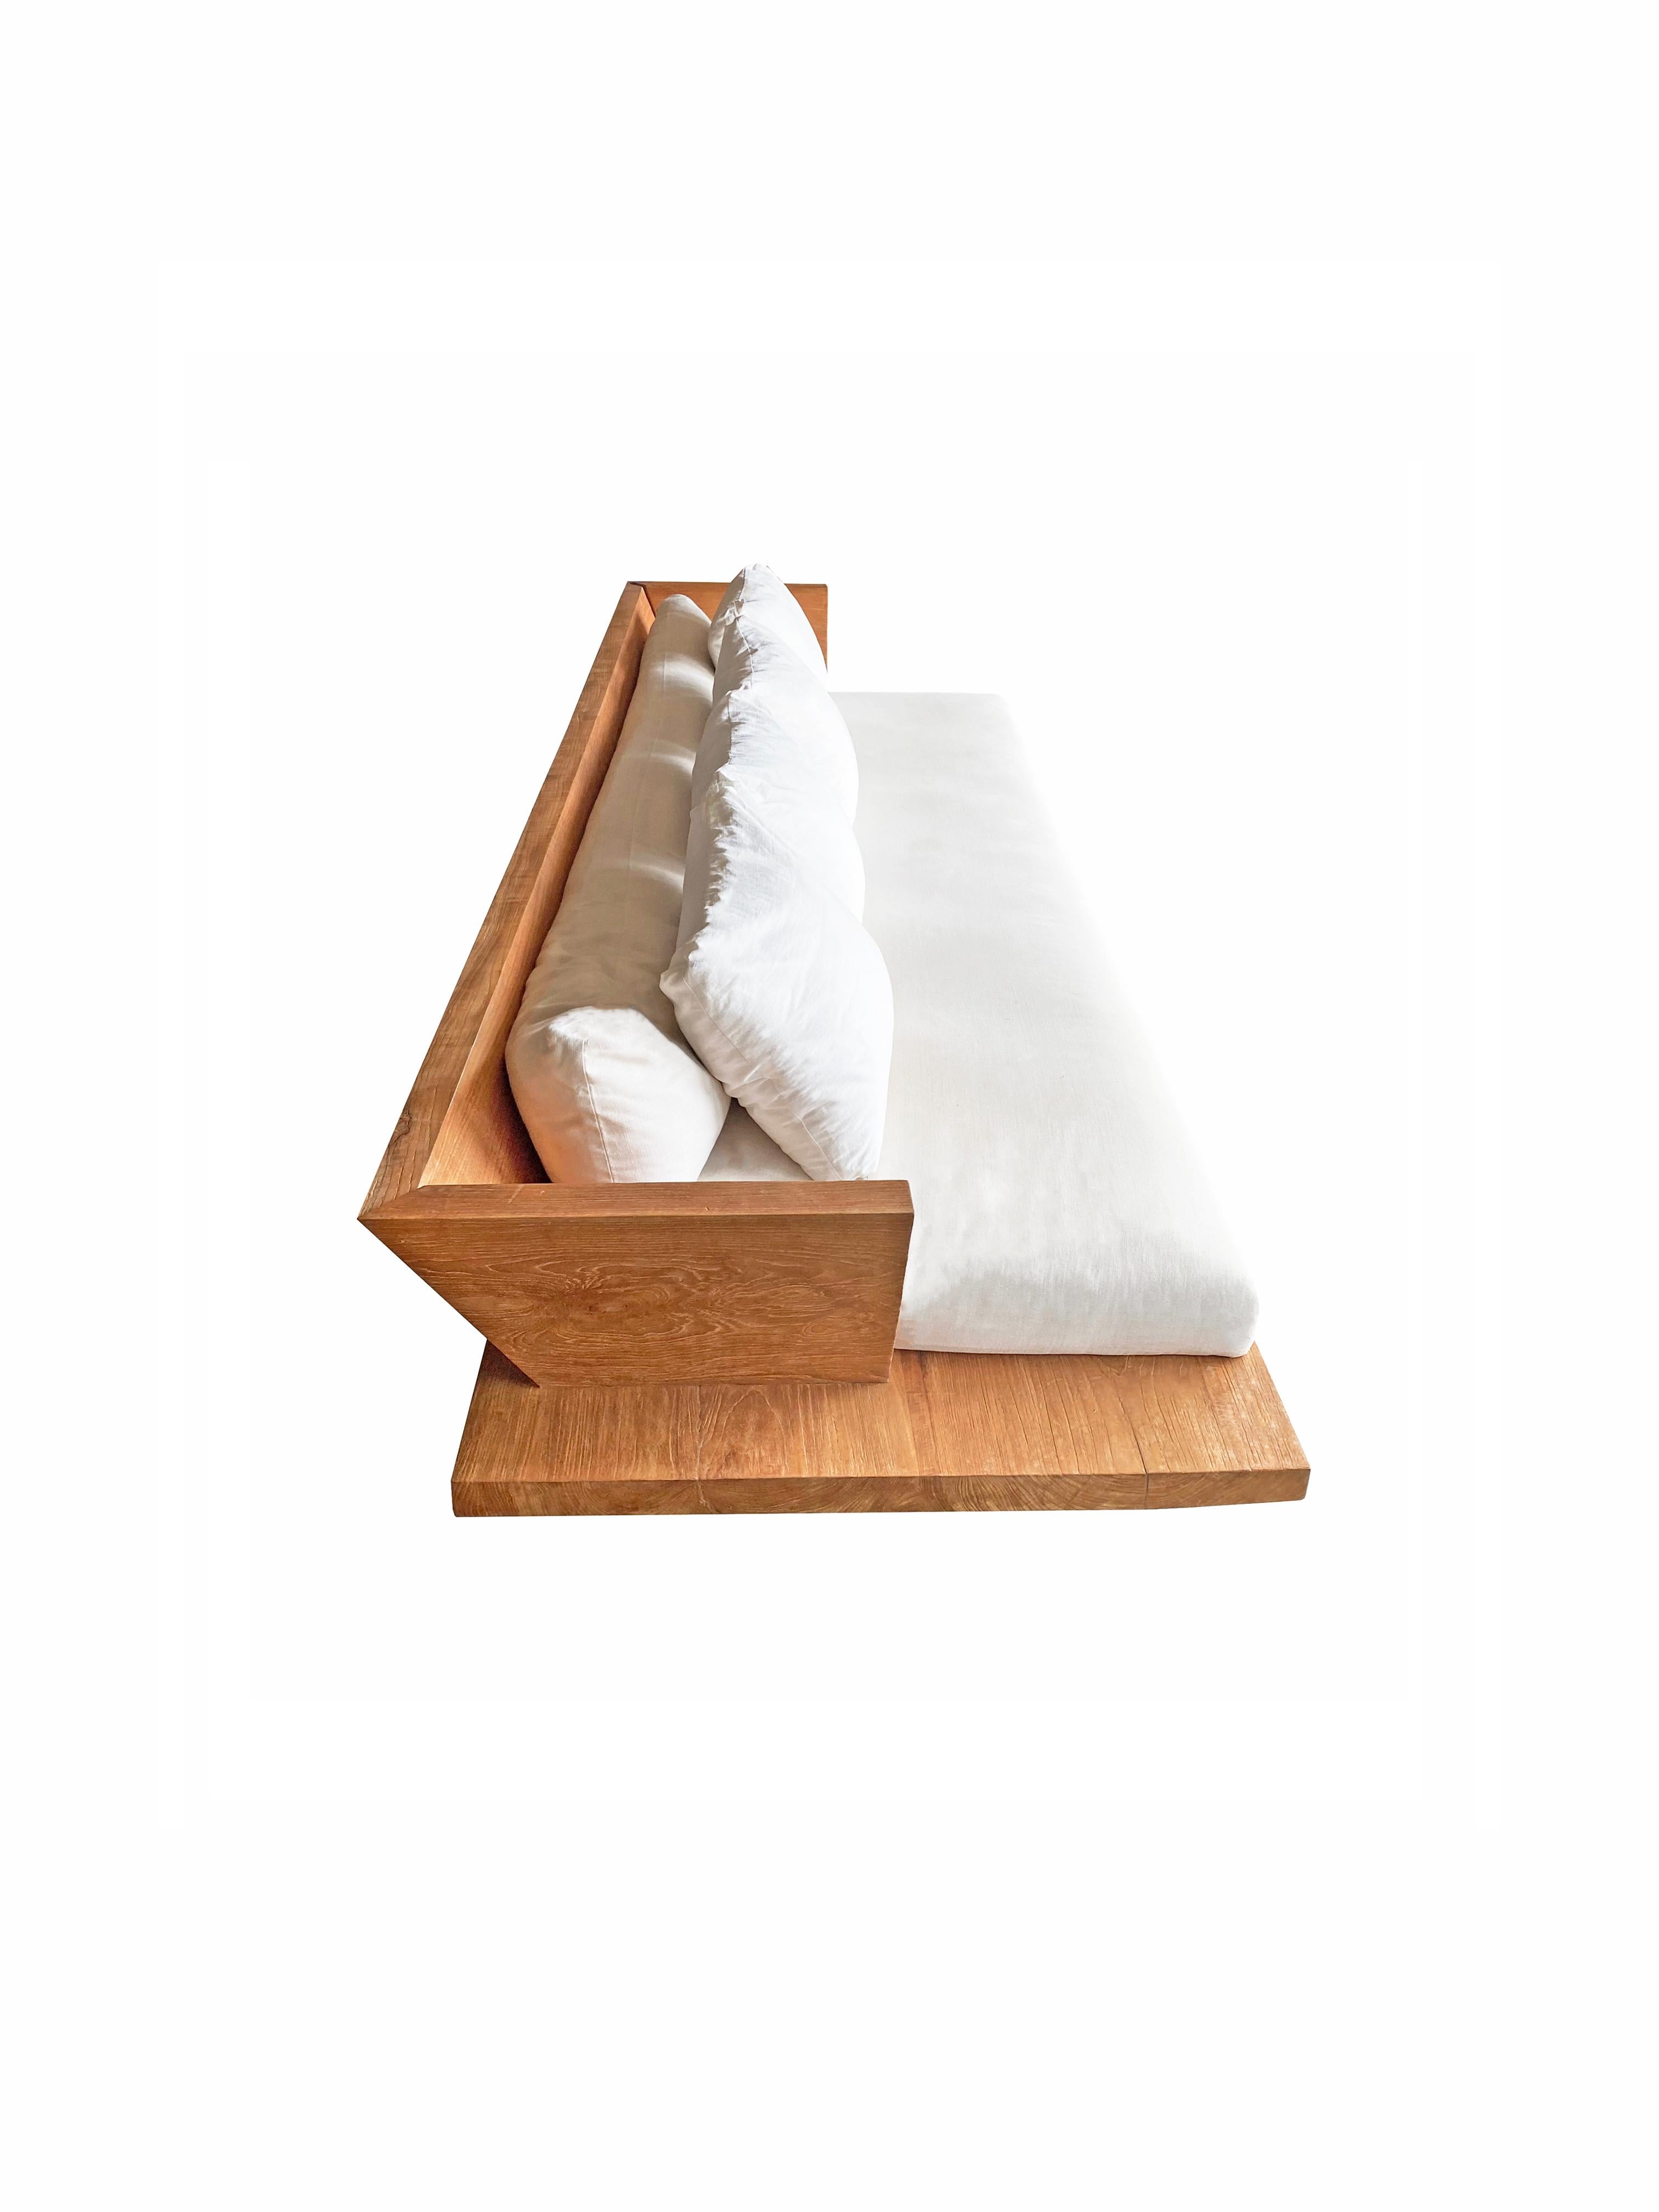 modern teak wood sofa design